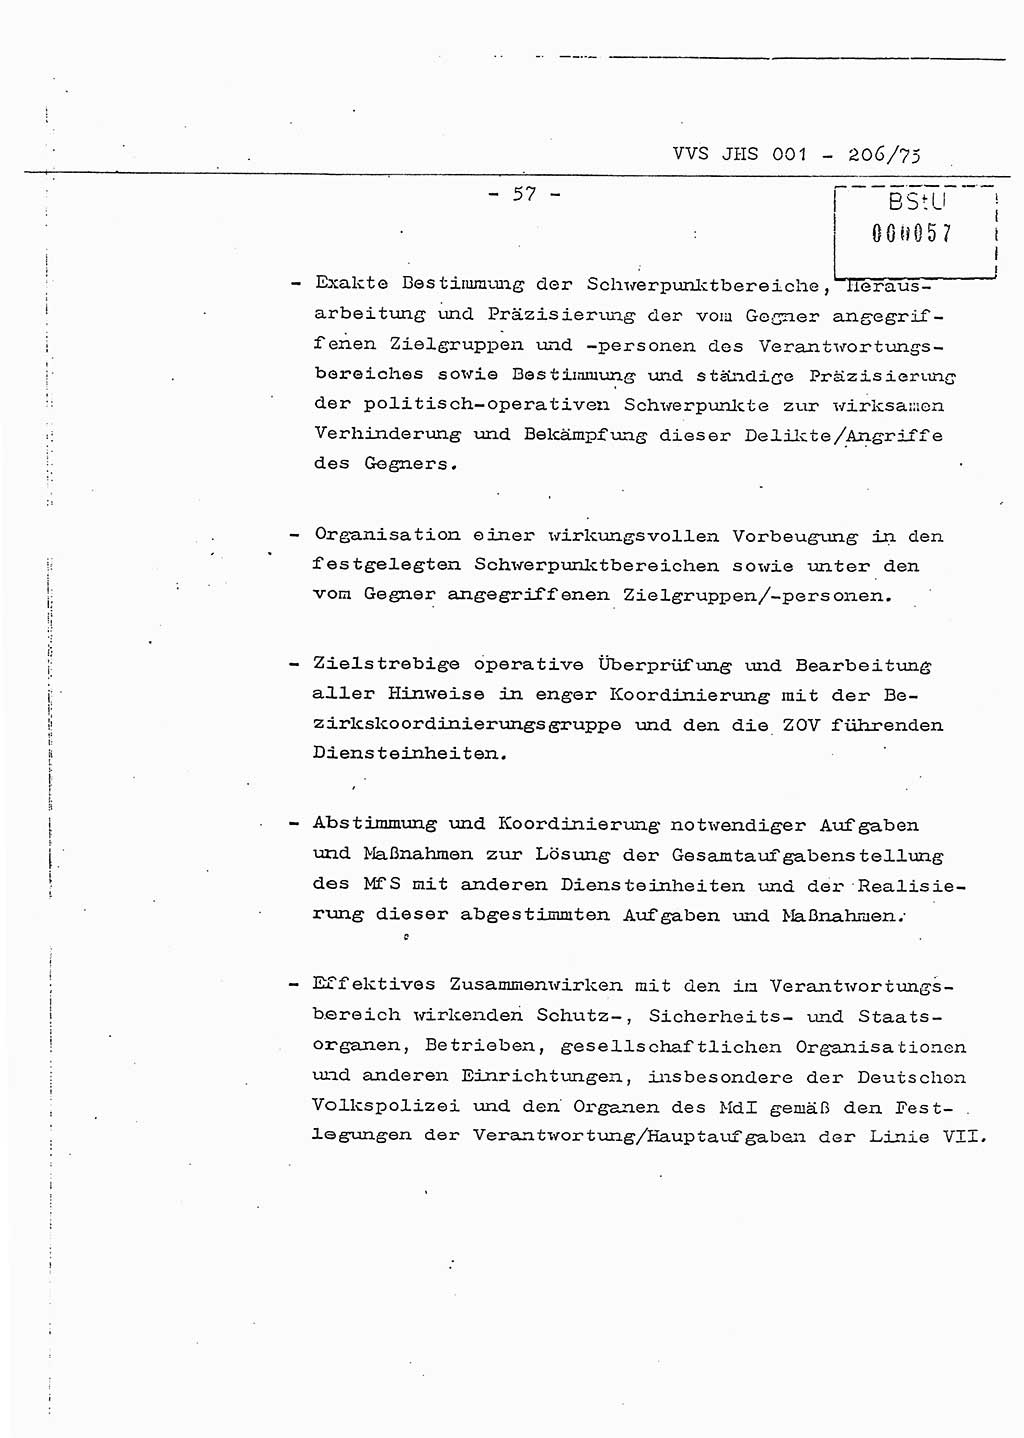 Dissertation Generalmajor Manfred Hummitzsch (Leiter der BV Leipzig), Generalmajor Heinz Fiedler (HA Ⅵ), Oberst Rolf Fister (HA Ⅸ), Ministerium für Staatssicherheit (MfS) [Deutsche Demokratische Republik (DDR)], Juristische Hochschule (JHS), Vertrauliche Verschlußsache (VVS) 001-206/75, Potsdam 1975, Seite 57 (Diss. MfS DDR JHS VVS 001-206/75 1975, S. 57)